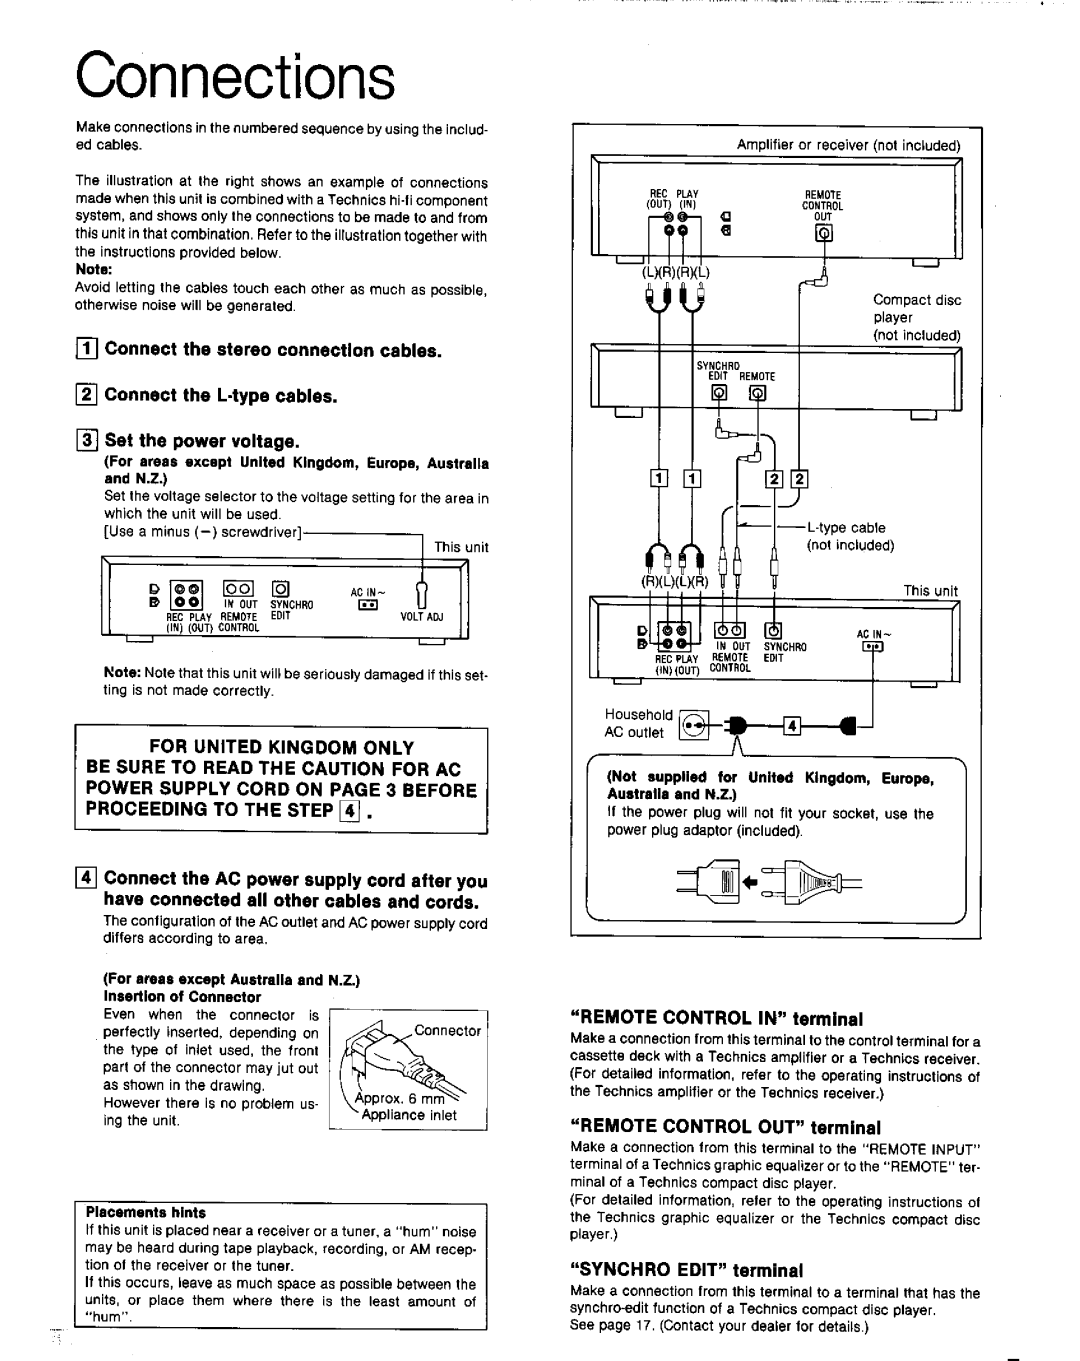 Technics RS-TR777, RS-TR979 manual 